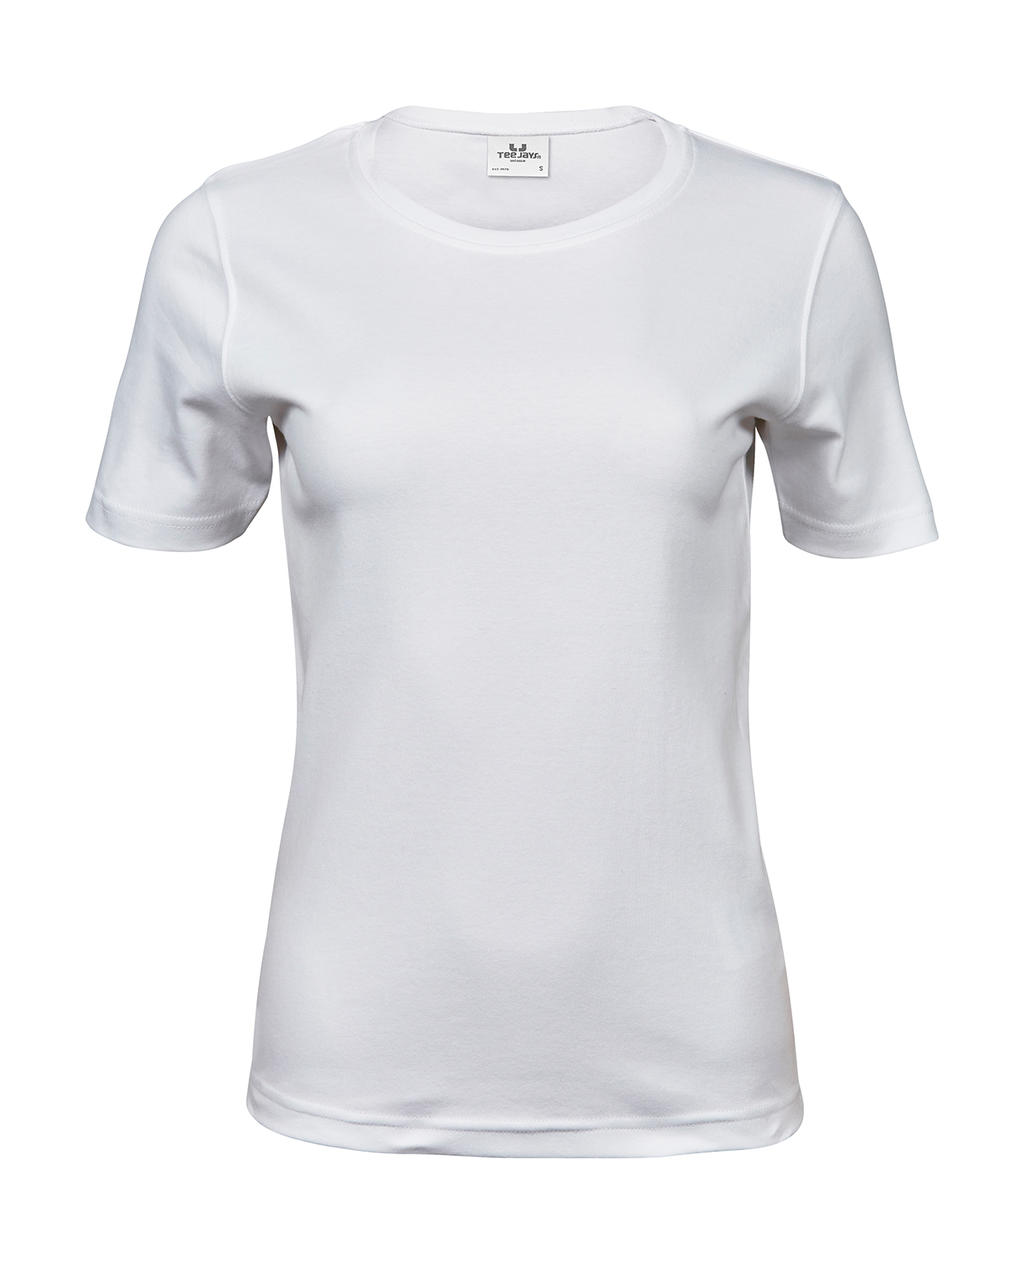 Tee jays - camiseta interlock mujer - 580